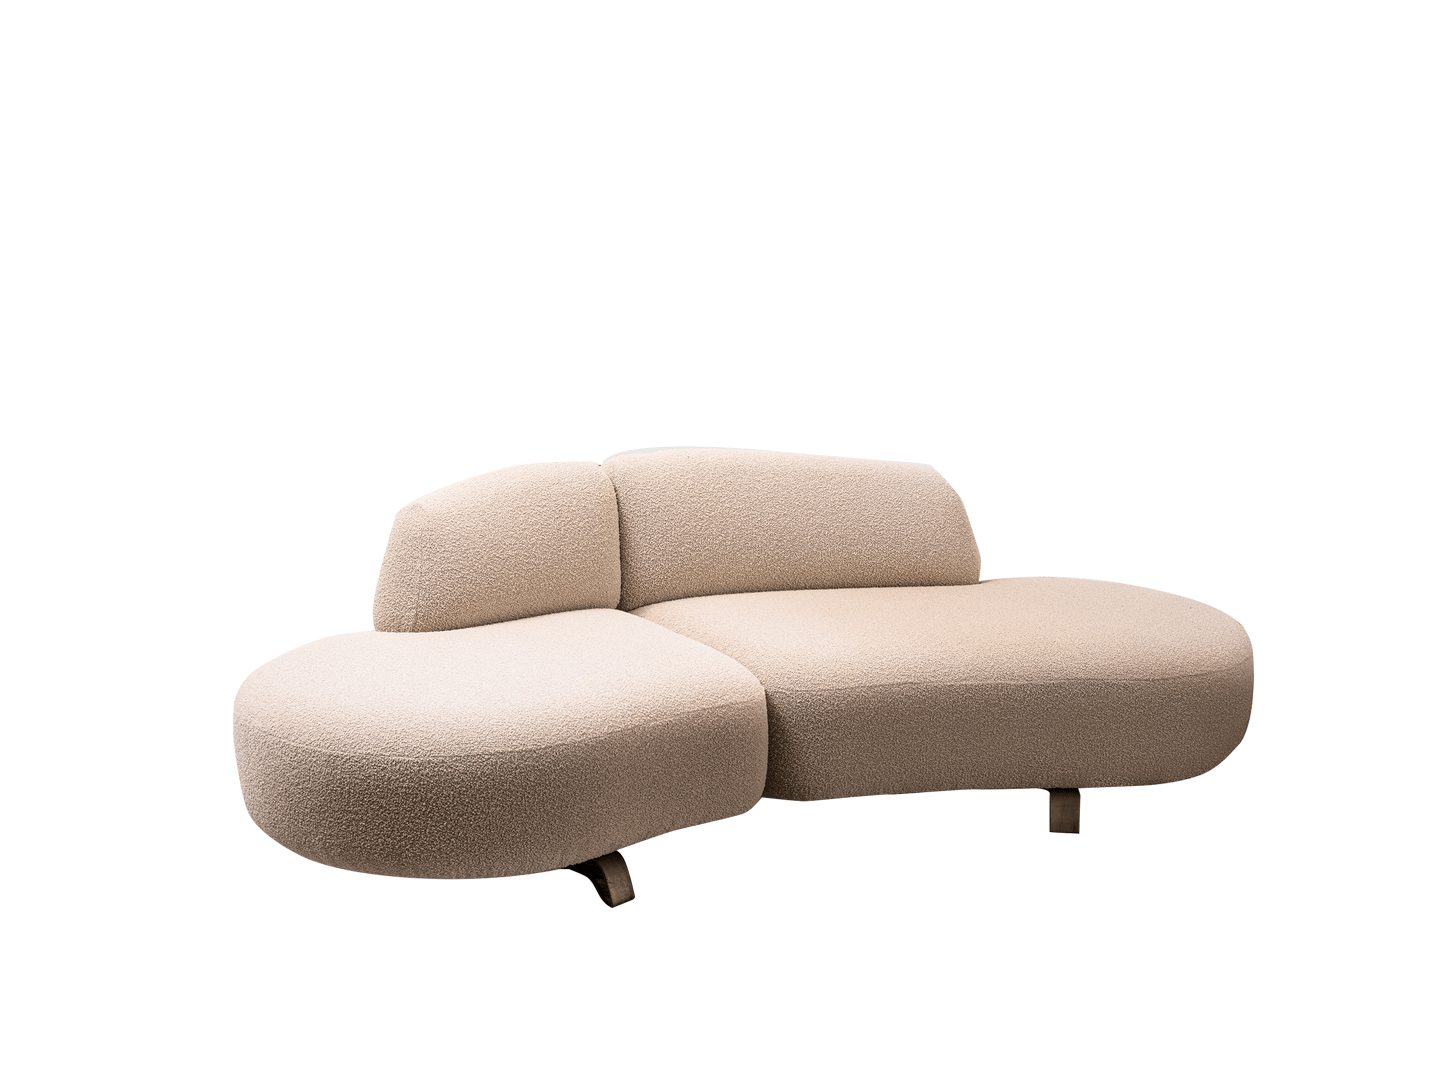 Vao sofa 250